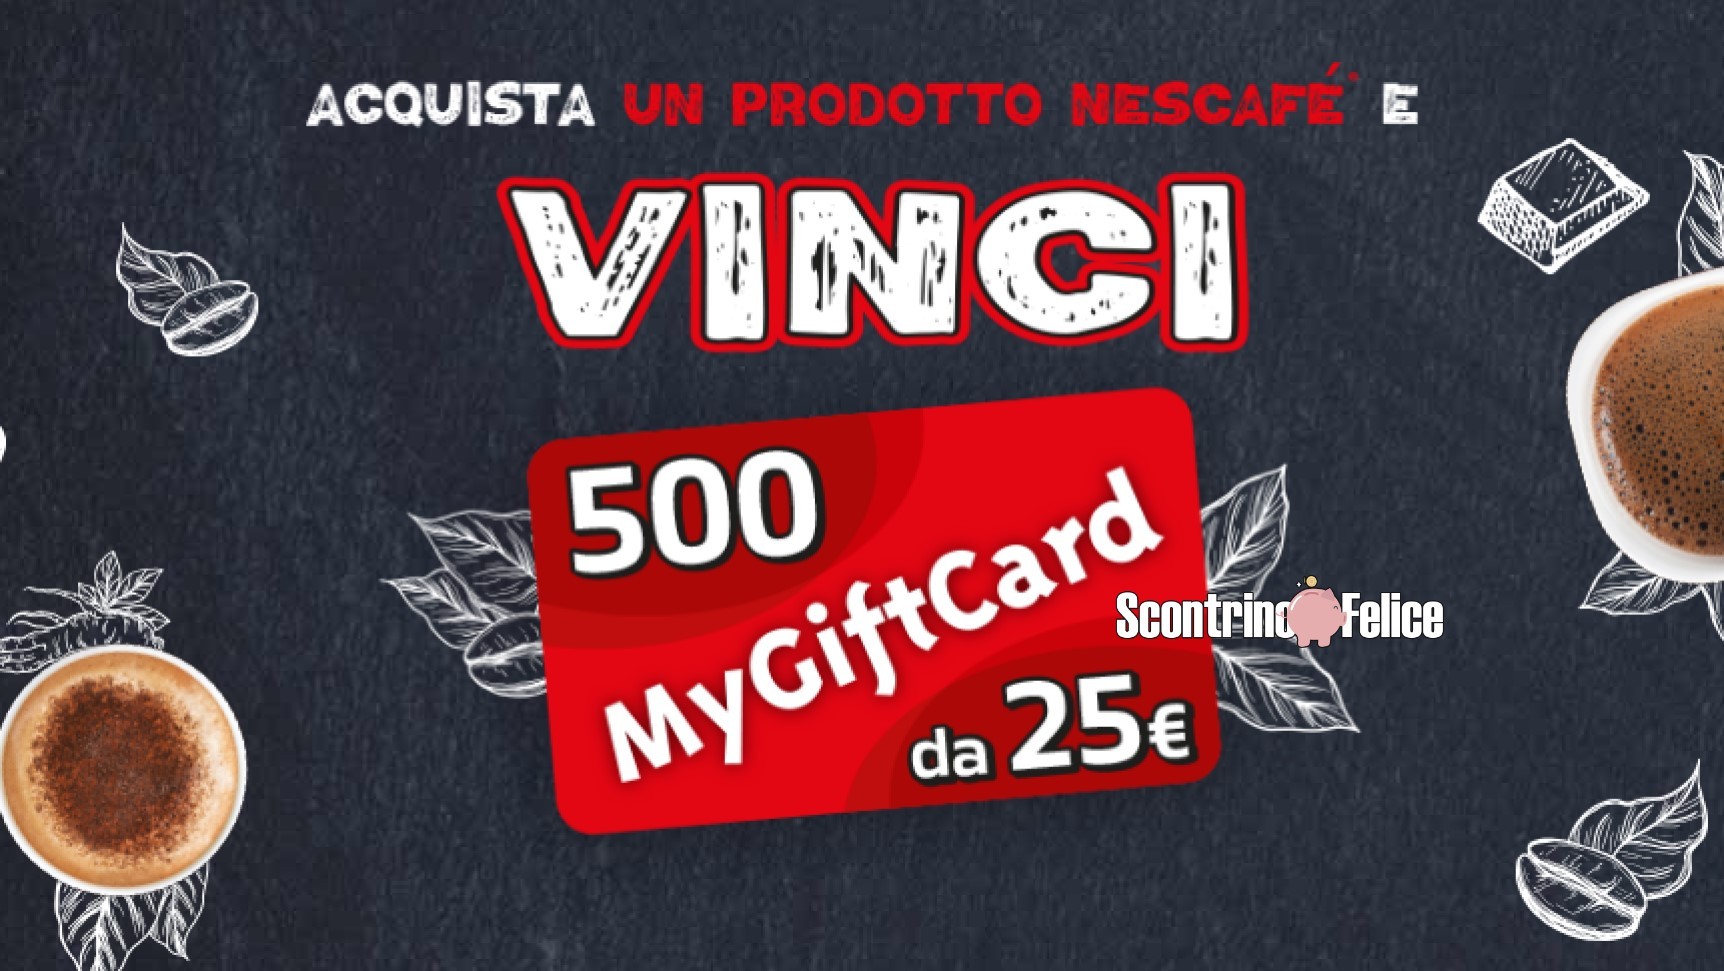 Concorso Nescafé: vinci 500 MyGiftCard da 25€